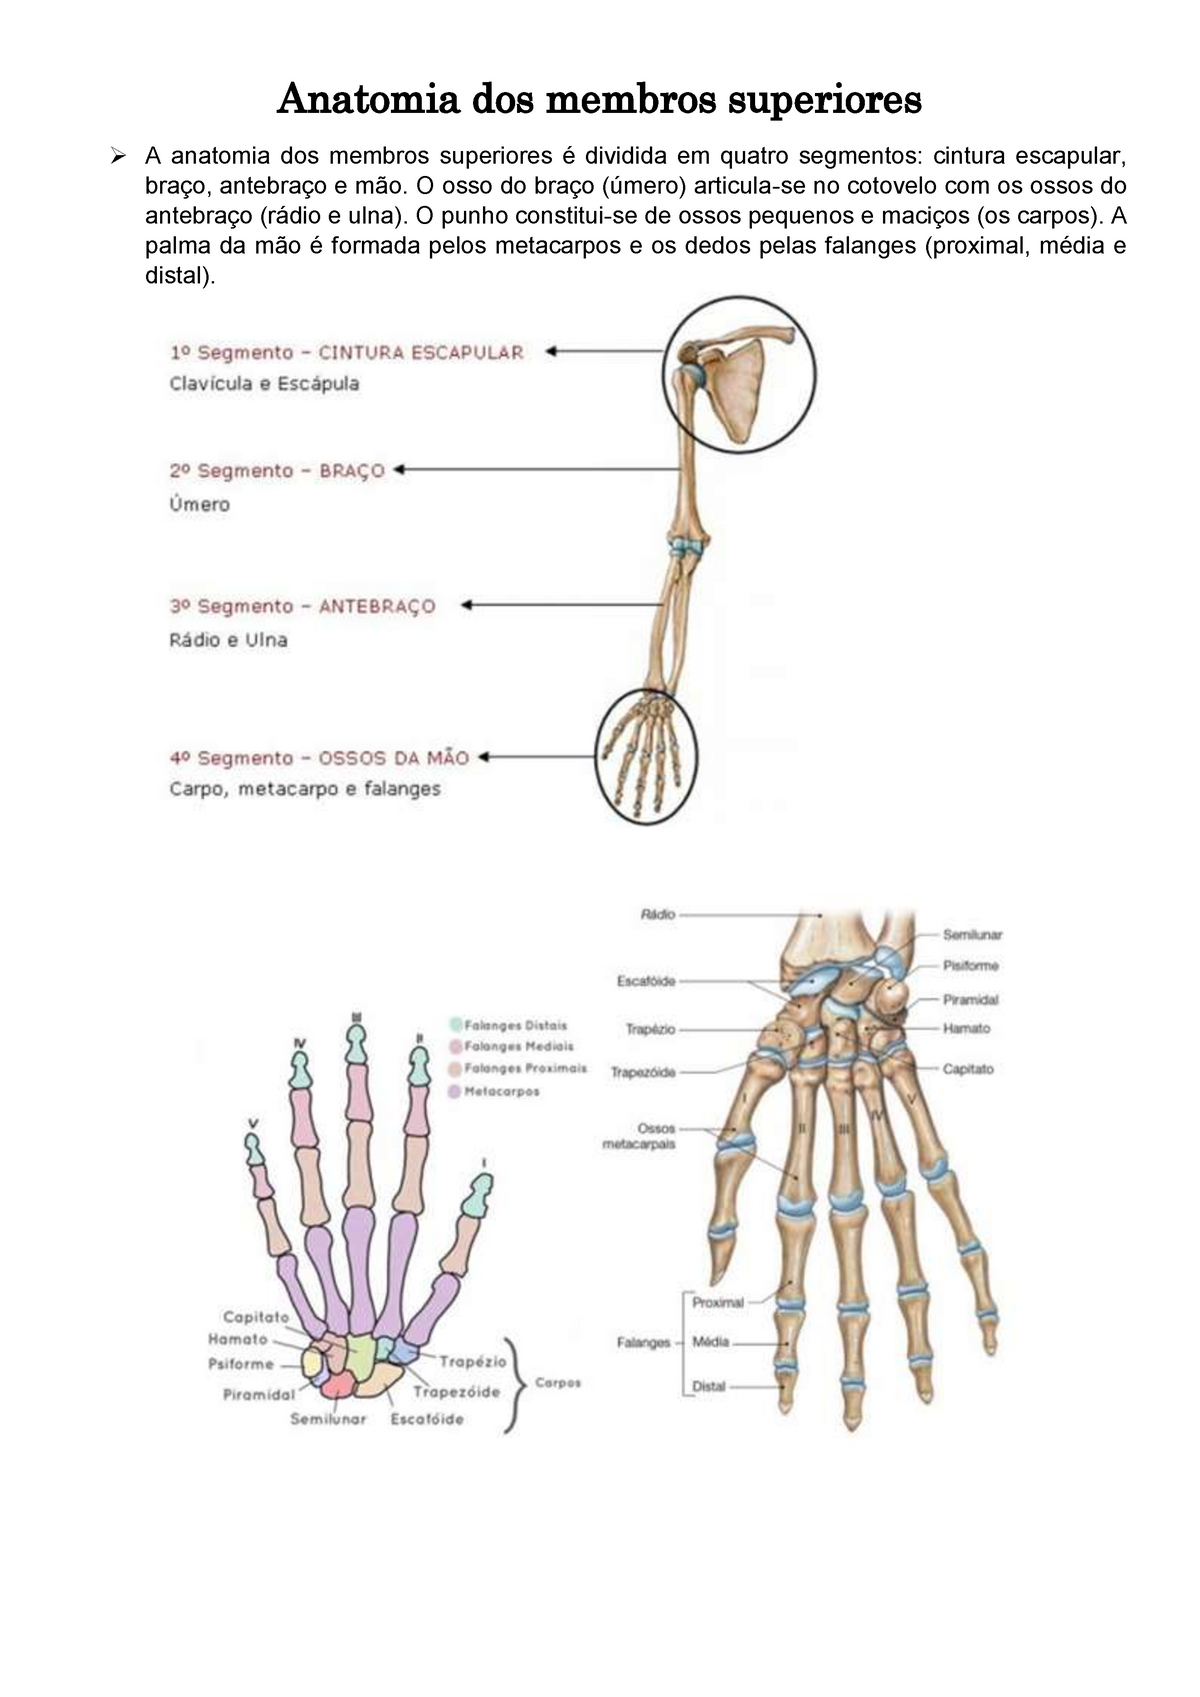 Anatomia dos membros superiores - O osso do braço (úmero) articula